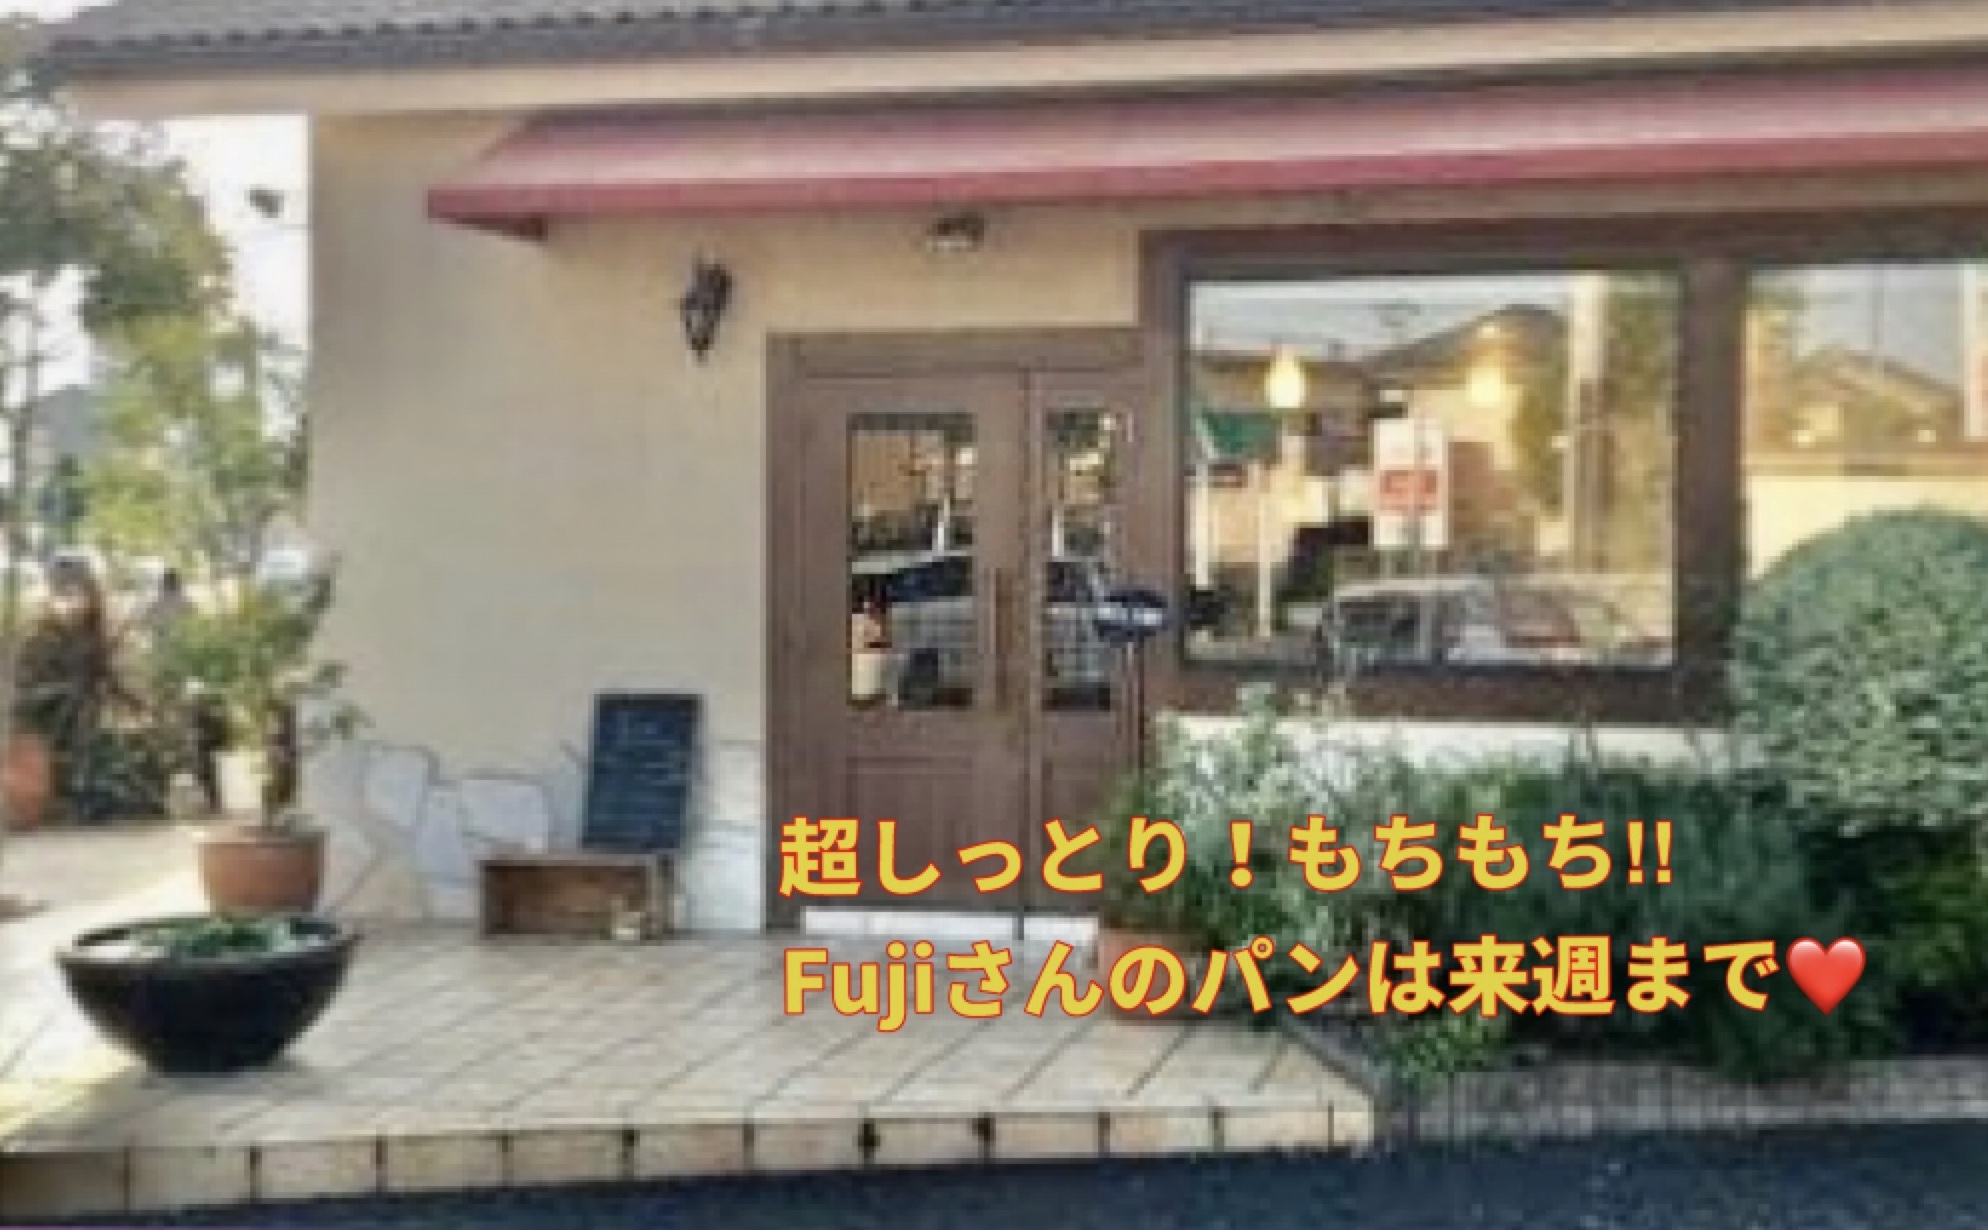 栃木市Fujiさんのパン